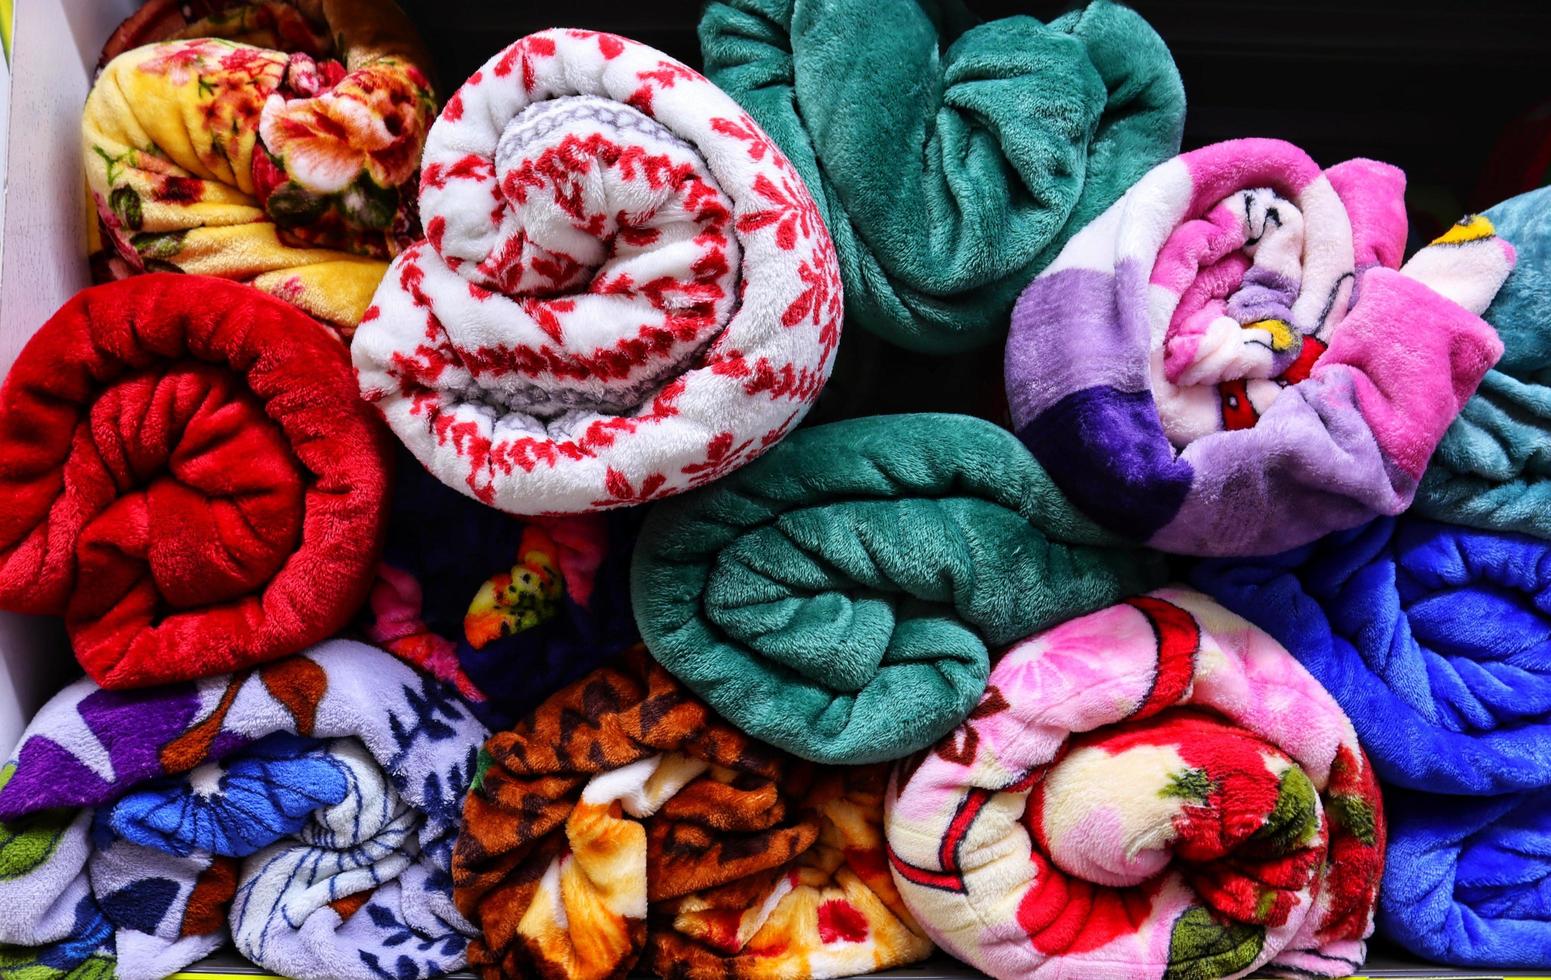 brillant Célibataire multi coloré lit couvertures rouleau dans étagères photo